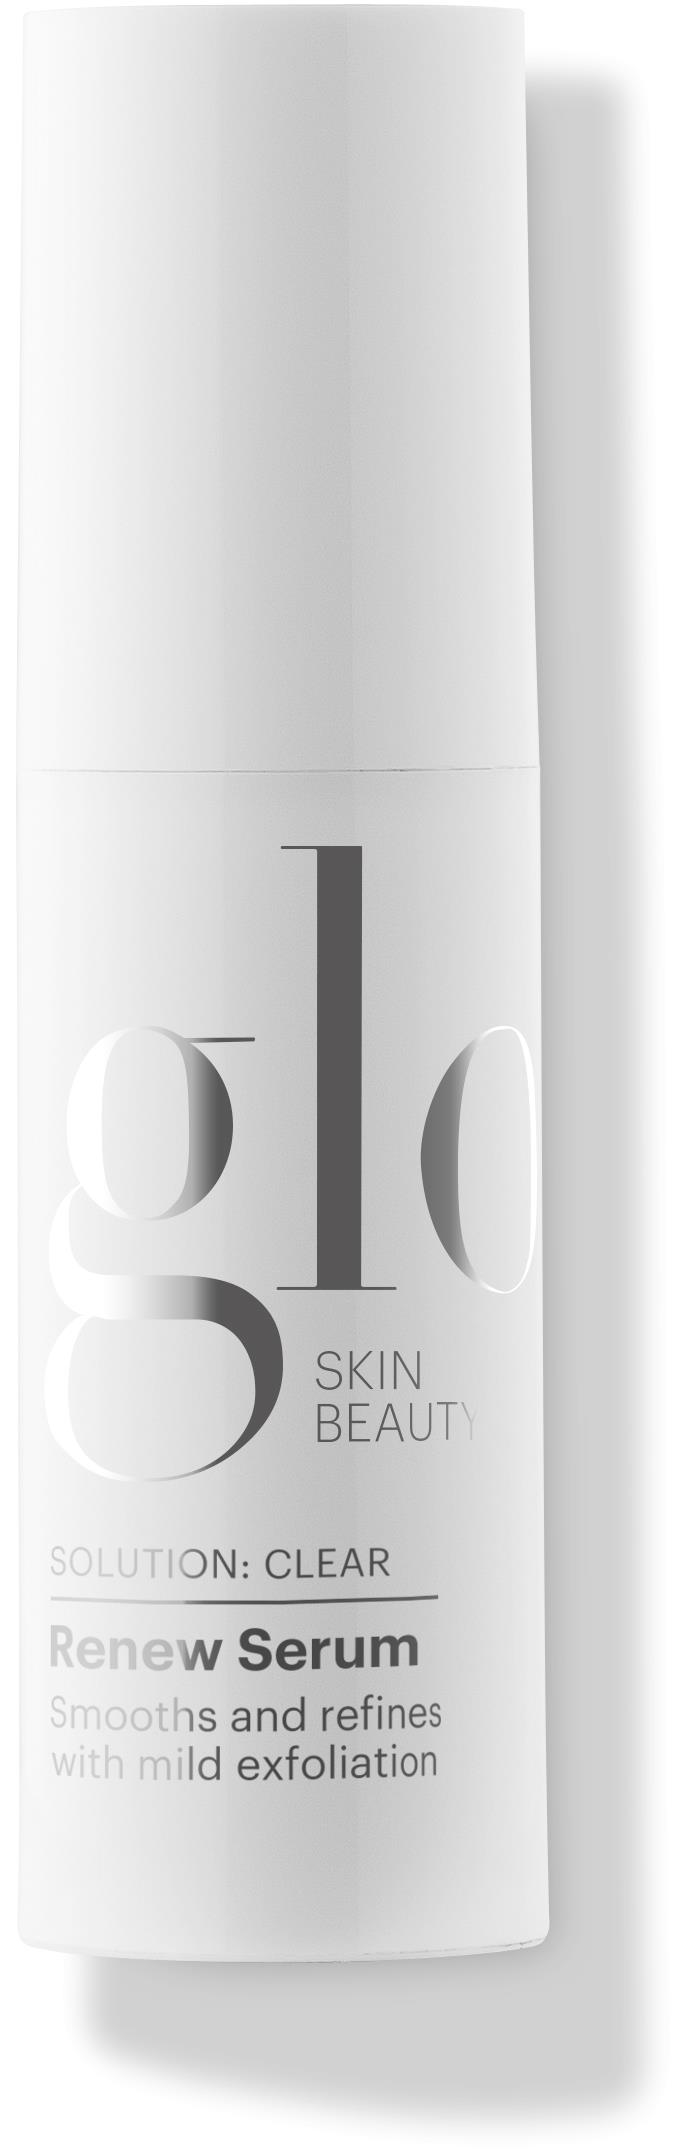 Glo Skin Beauty Beta Clarity BHA drops 30 ml | lyko.com